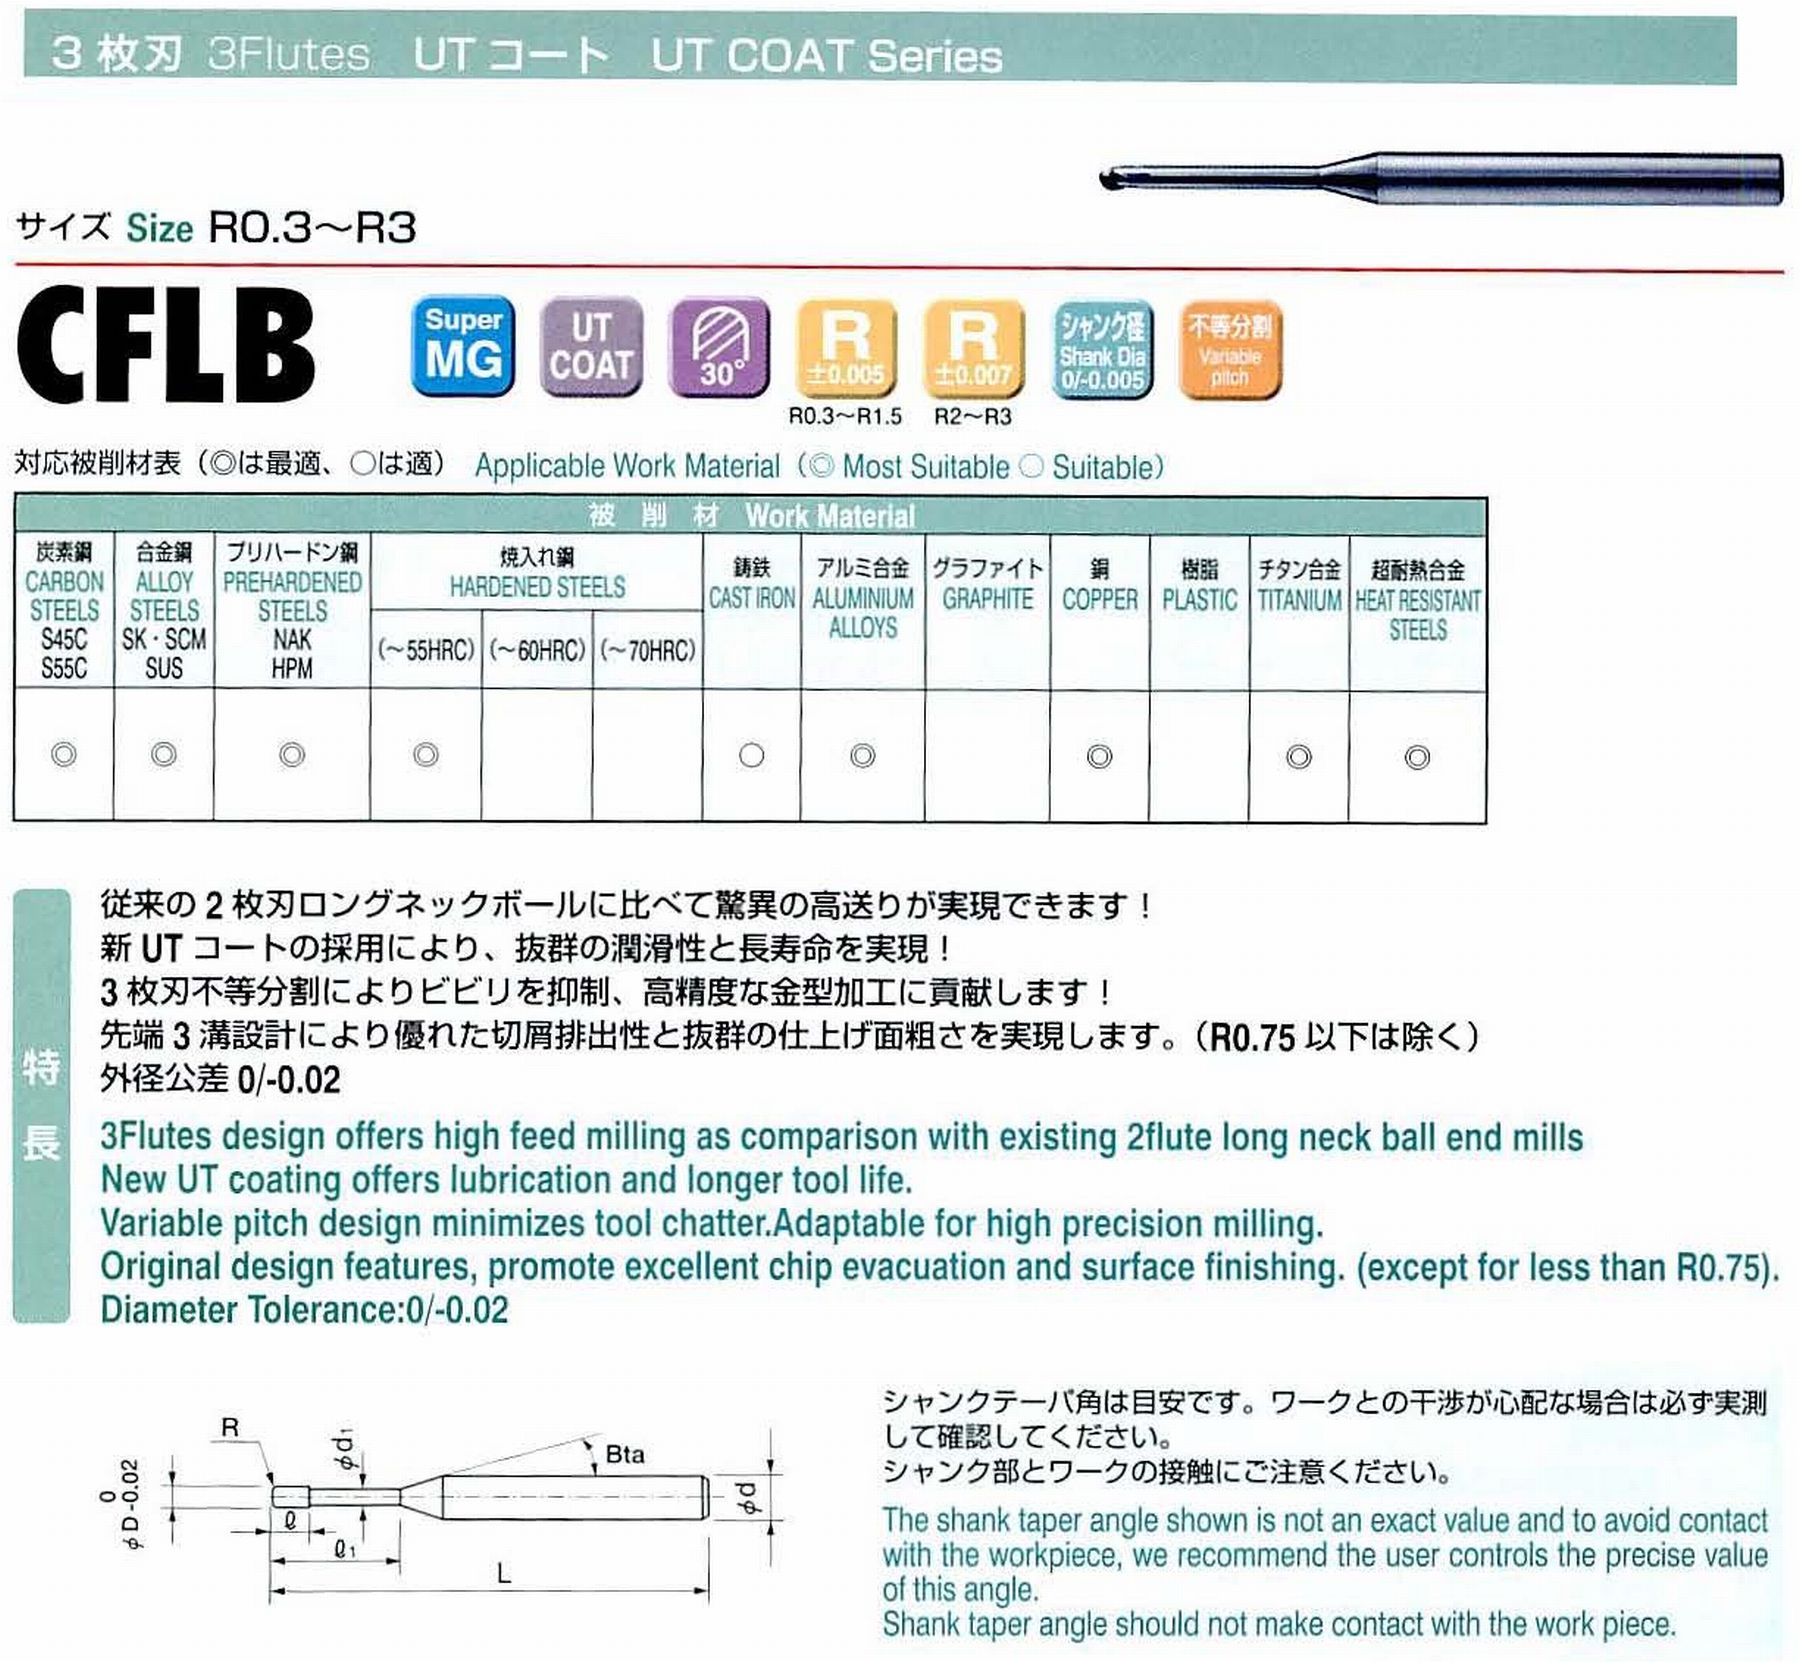 ユニオンツール 3枚刃 CFLB3020-100 ボール半径R1 有効長10 刃長1.6 首径1.83 シャンクテーパ角16° 全長50 シャンク径4